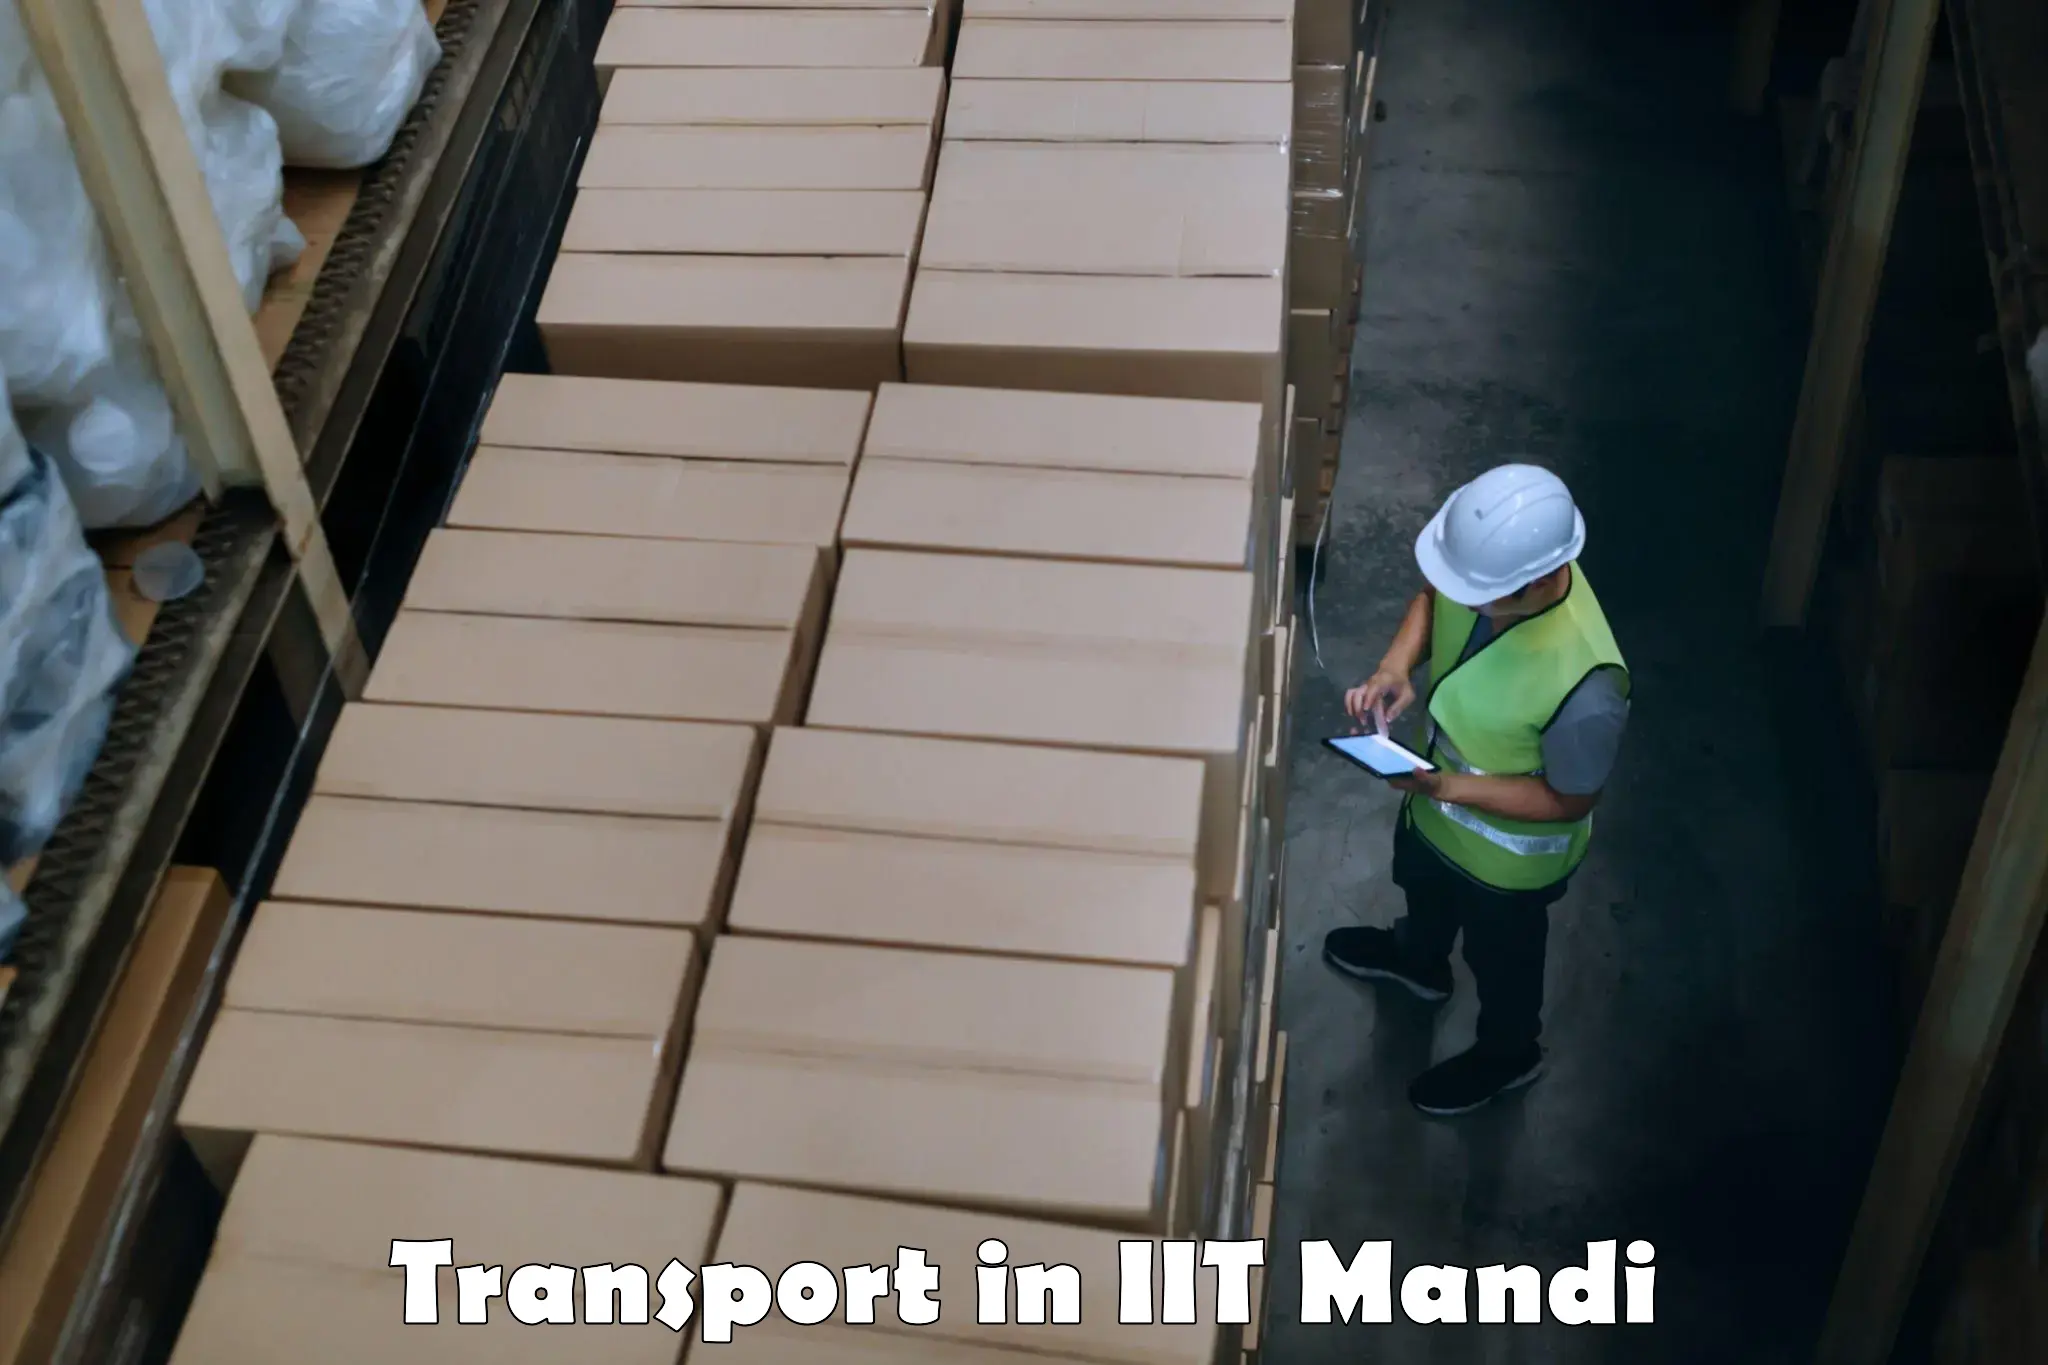 Nearby transport service in IIT Mandi